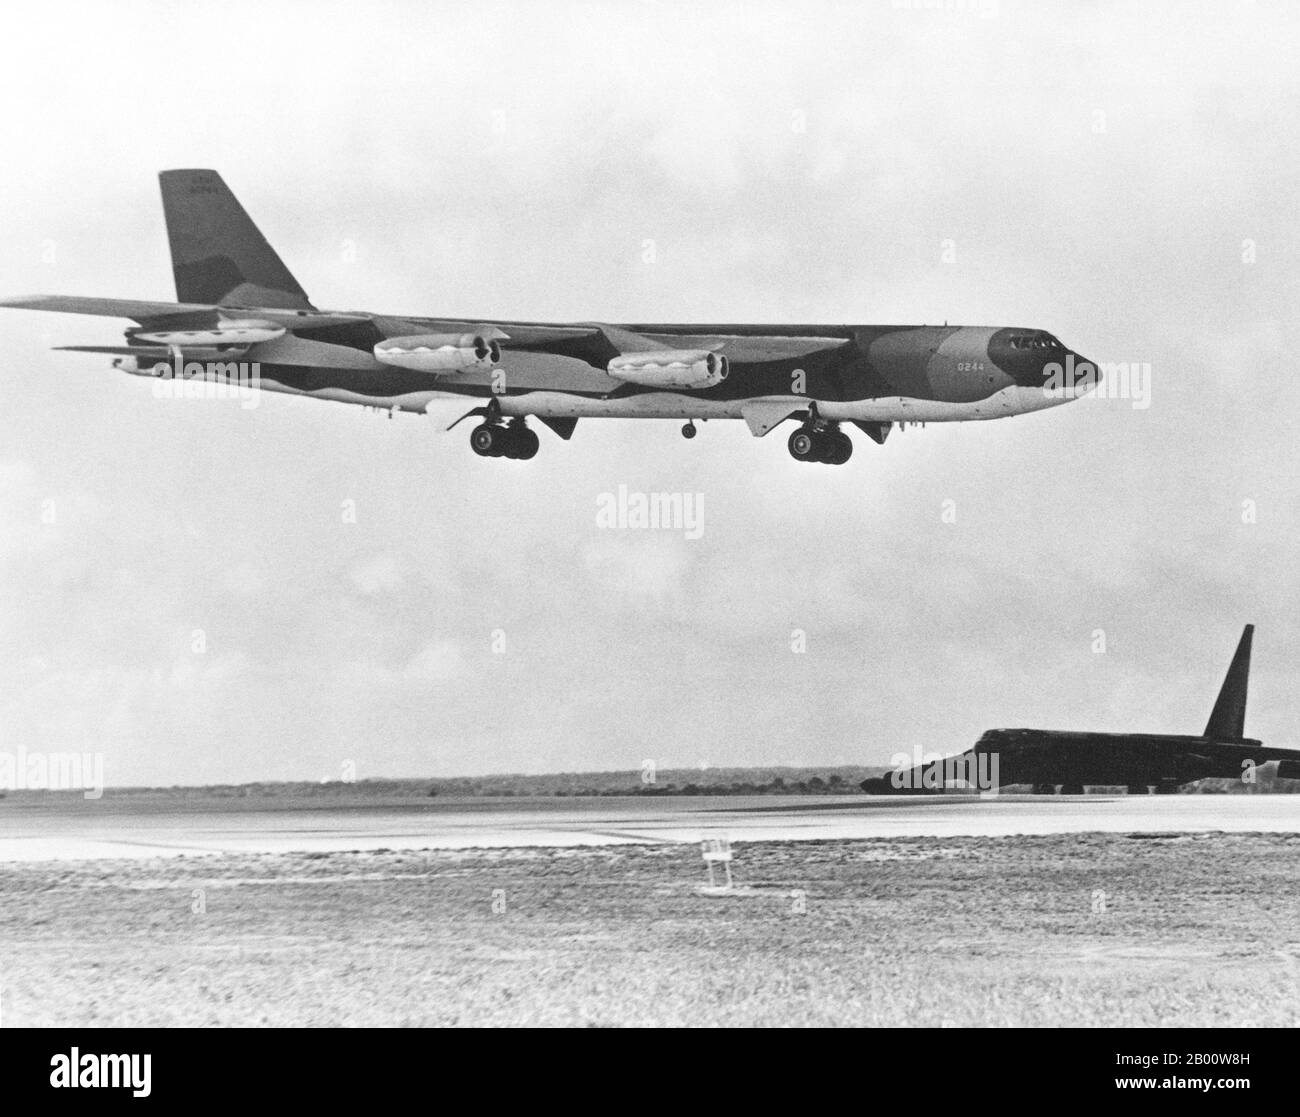 Guam: Una USAF B-52D Stratofortress è oscurata da un USAF B-52G di ritorno da una missione di bombardamento su Hanoi, 1972. Un aereo B-52D Stratofortress attende accanto alla pista mentre un B-52G si avvicina per l'atterraggio dopo aver completato una missione di bombardamento sul Vietnam del Nord durante l'operazione Linebacker. Gli aeromobili provengono dal comando aereo strategico. La seconda Guerra Indocina, nota in America come Guerra del Vietnam, fu un conflitto militare dell'epoca della Guerra fredda che si verificò in Vietnam, Laos e Cambogia dal 1° novembre 1955 alla caduta di Saigon il 30 aprile 1975. Foto Stock